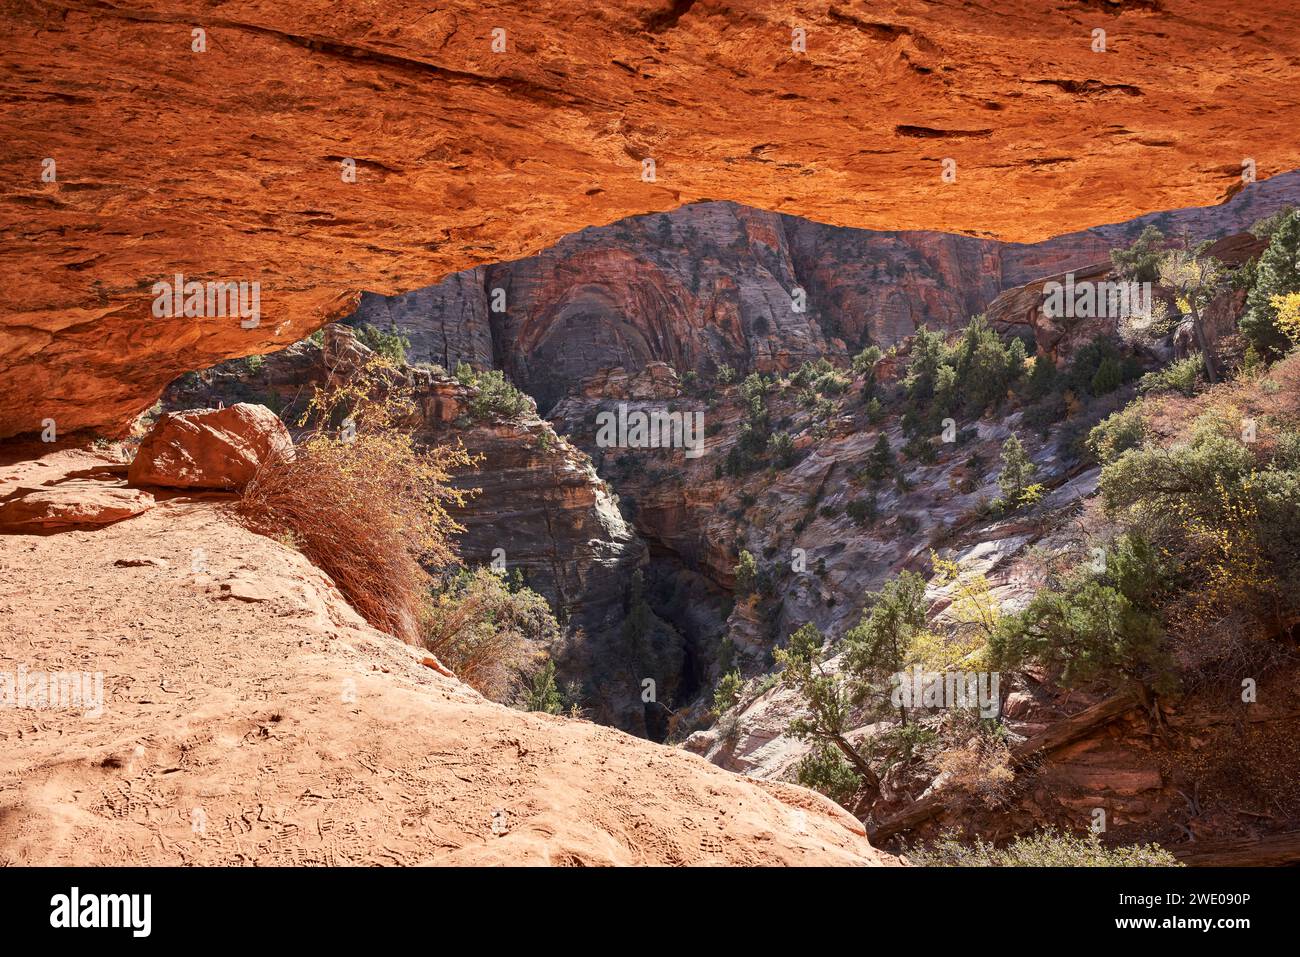 Uno strapiombo di roccia forma una grotta che si affaccia su un ripido ripido rientro nella valle sottostante. Foto Stock